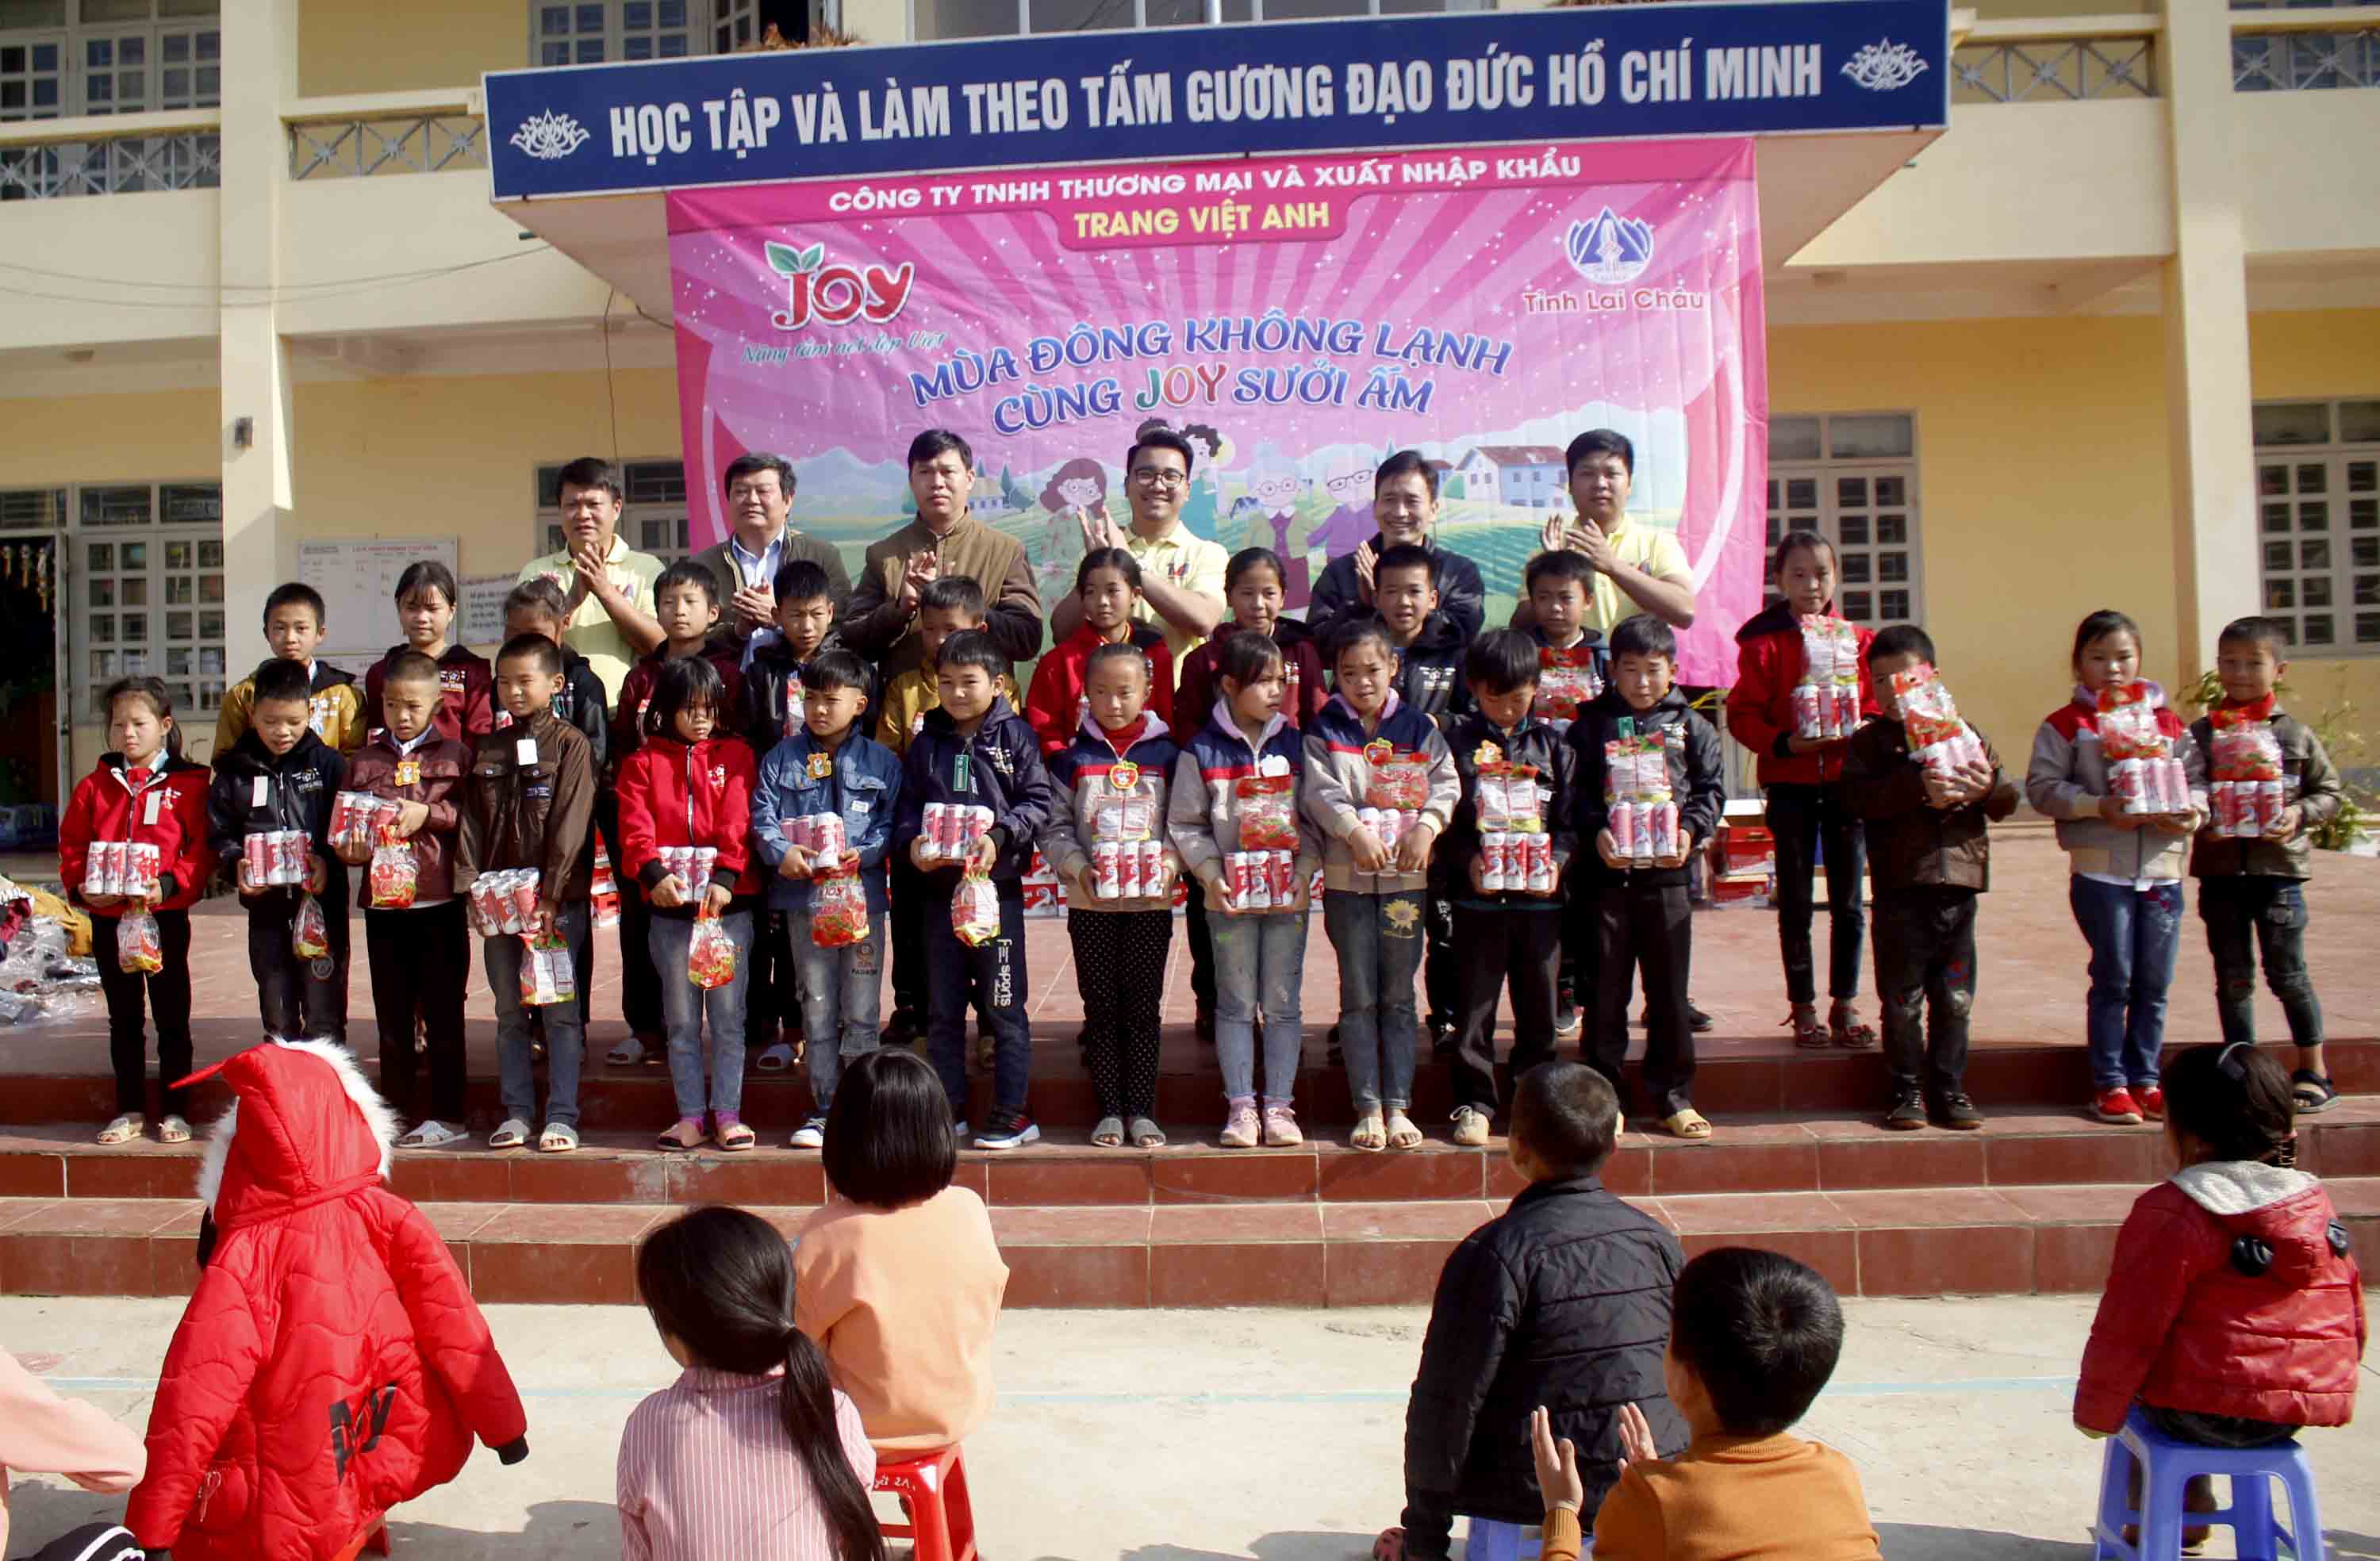 Học sinh trường PTDTBT Tiểu học xã Tà Hừa (huyện Than Uyên) nhận quà từ Công ty trách nhiệm hữu hạn thương mại và xuất nhập khẩu Trang Việt Anh, hãng nước giải khát Joy. 